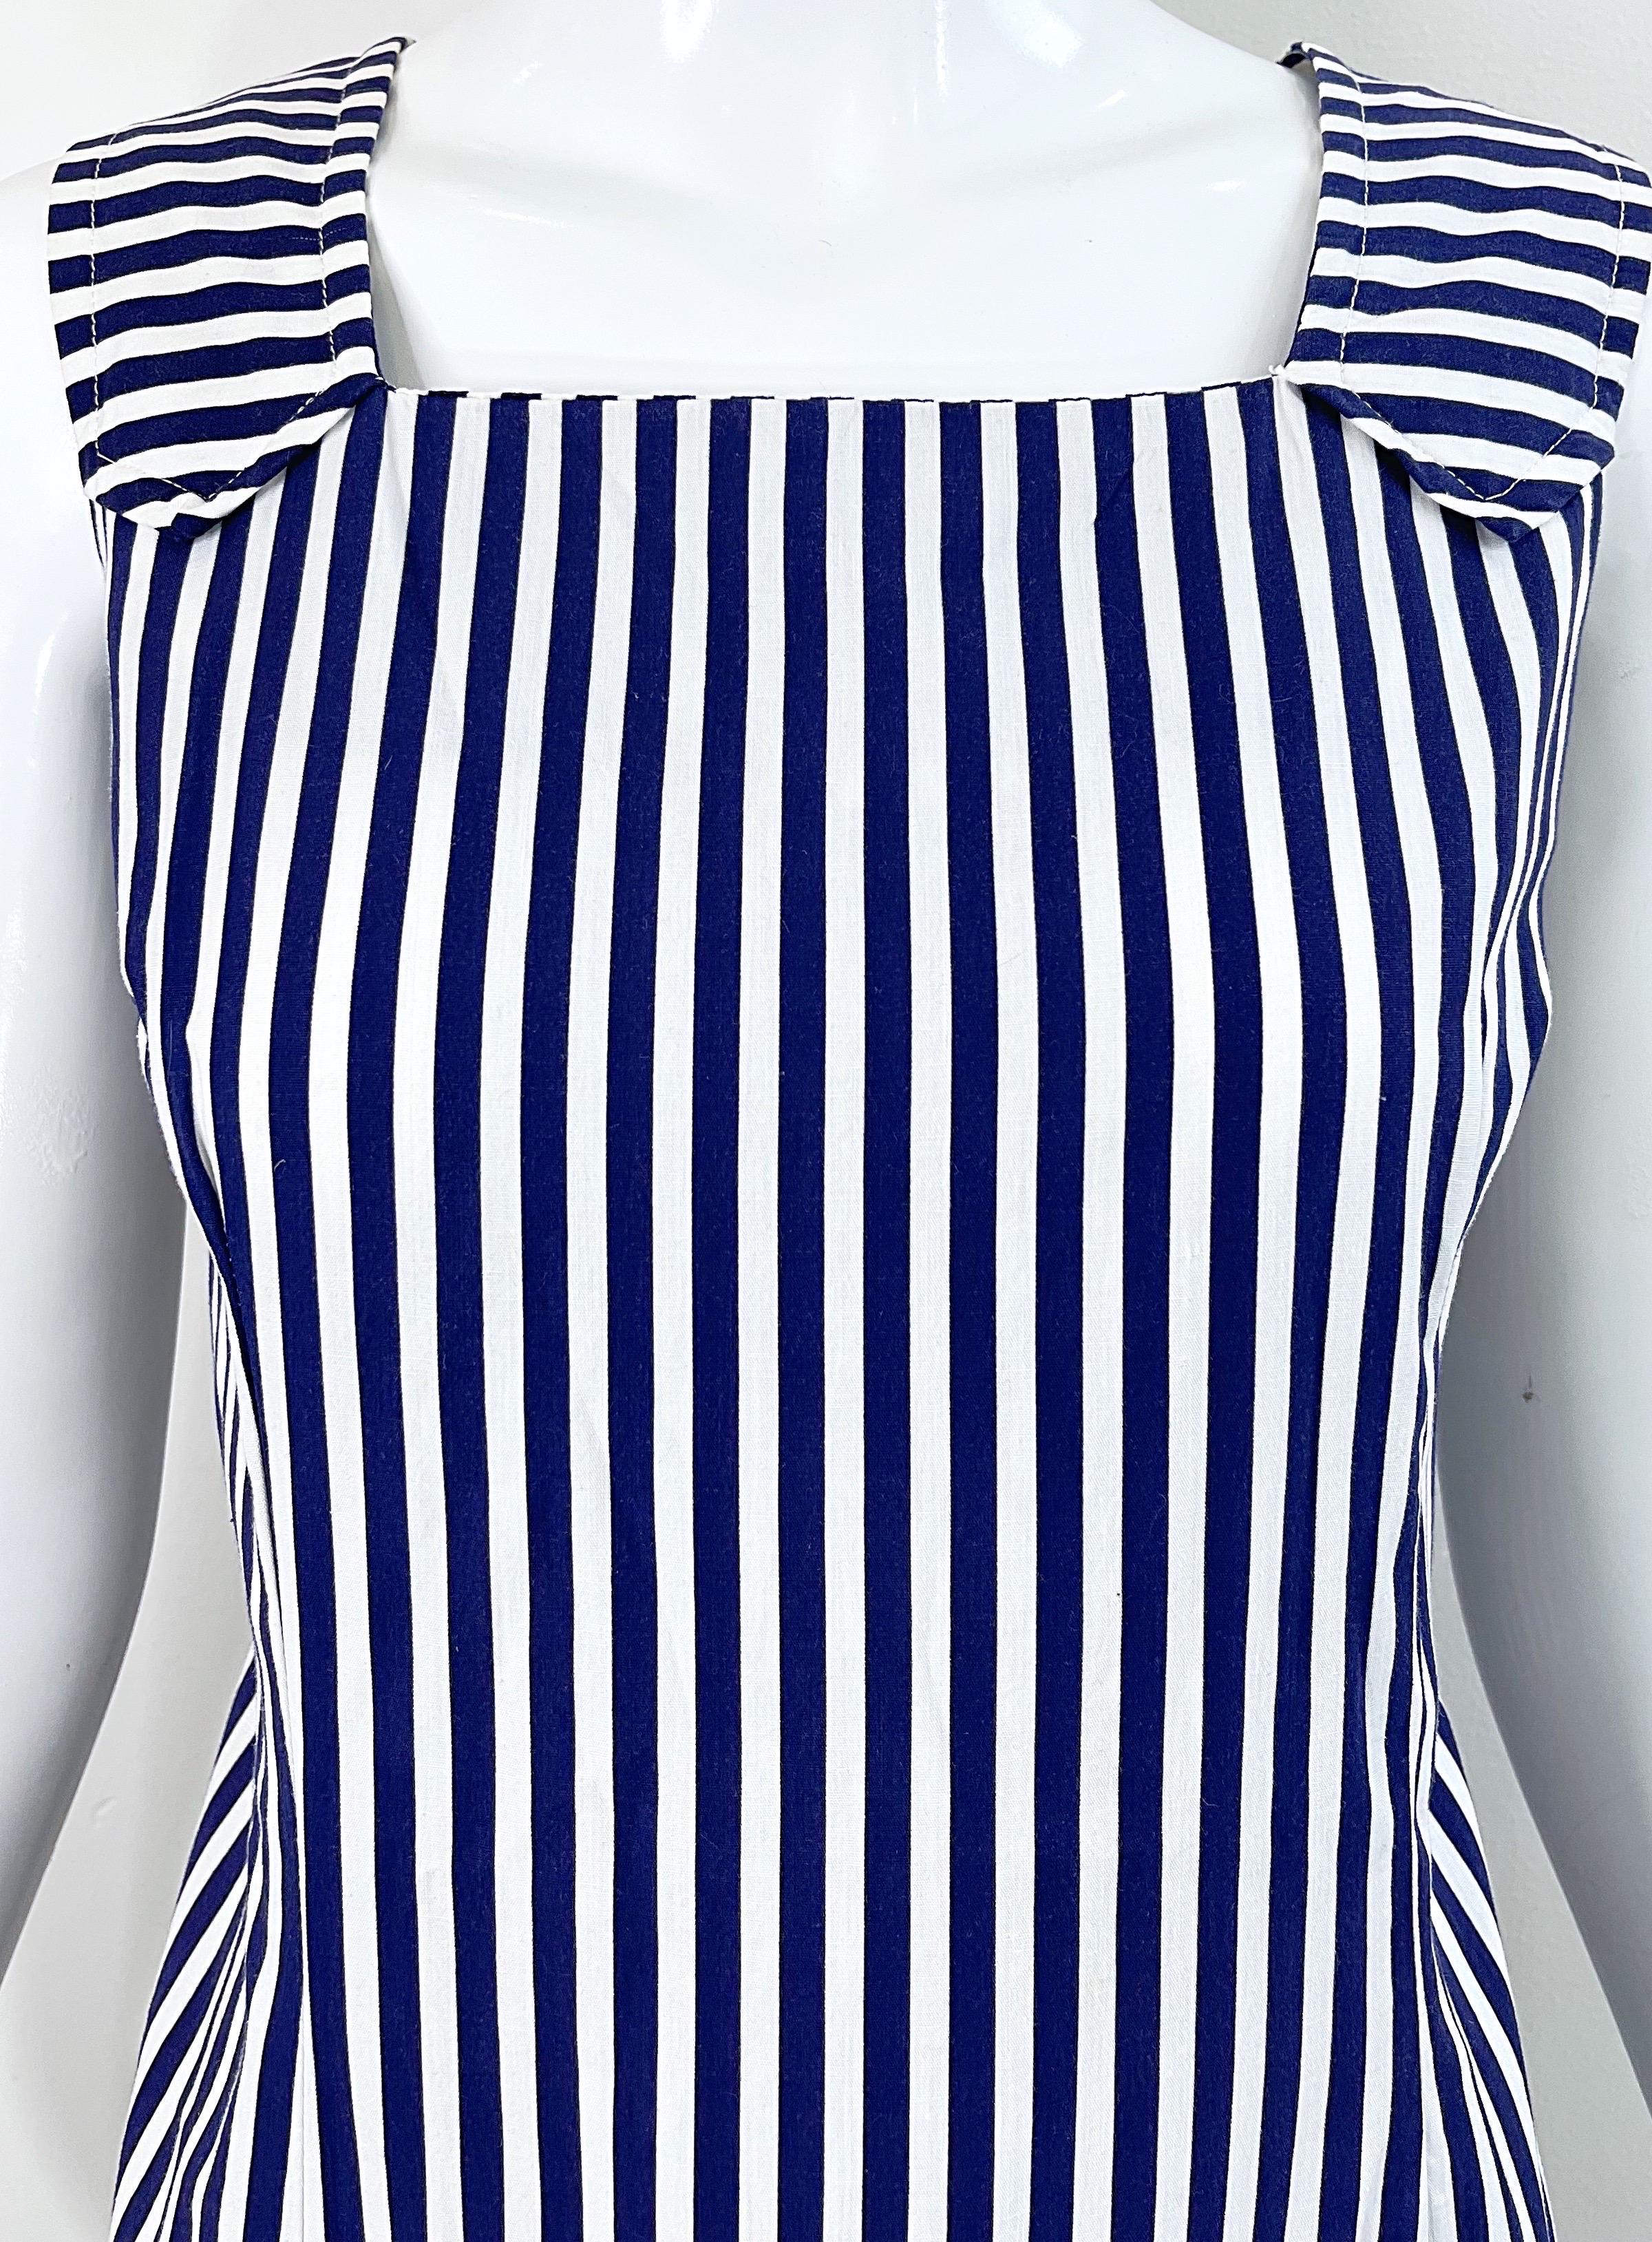 1960s Romper Large Size Navy + White Striped Cotton Vintage 60s Skort Dress For Sale 3